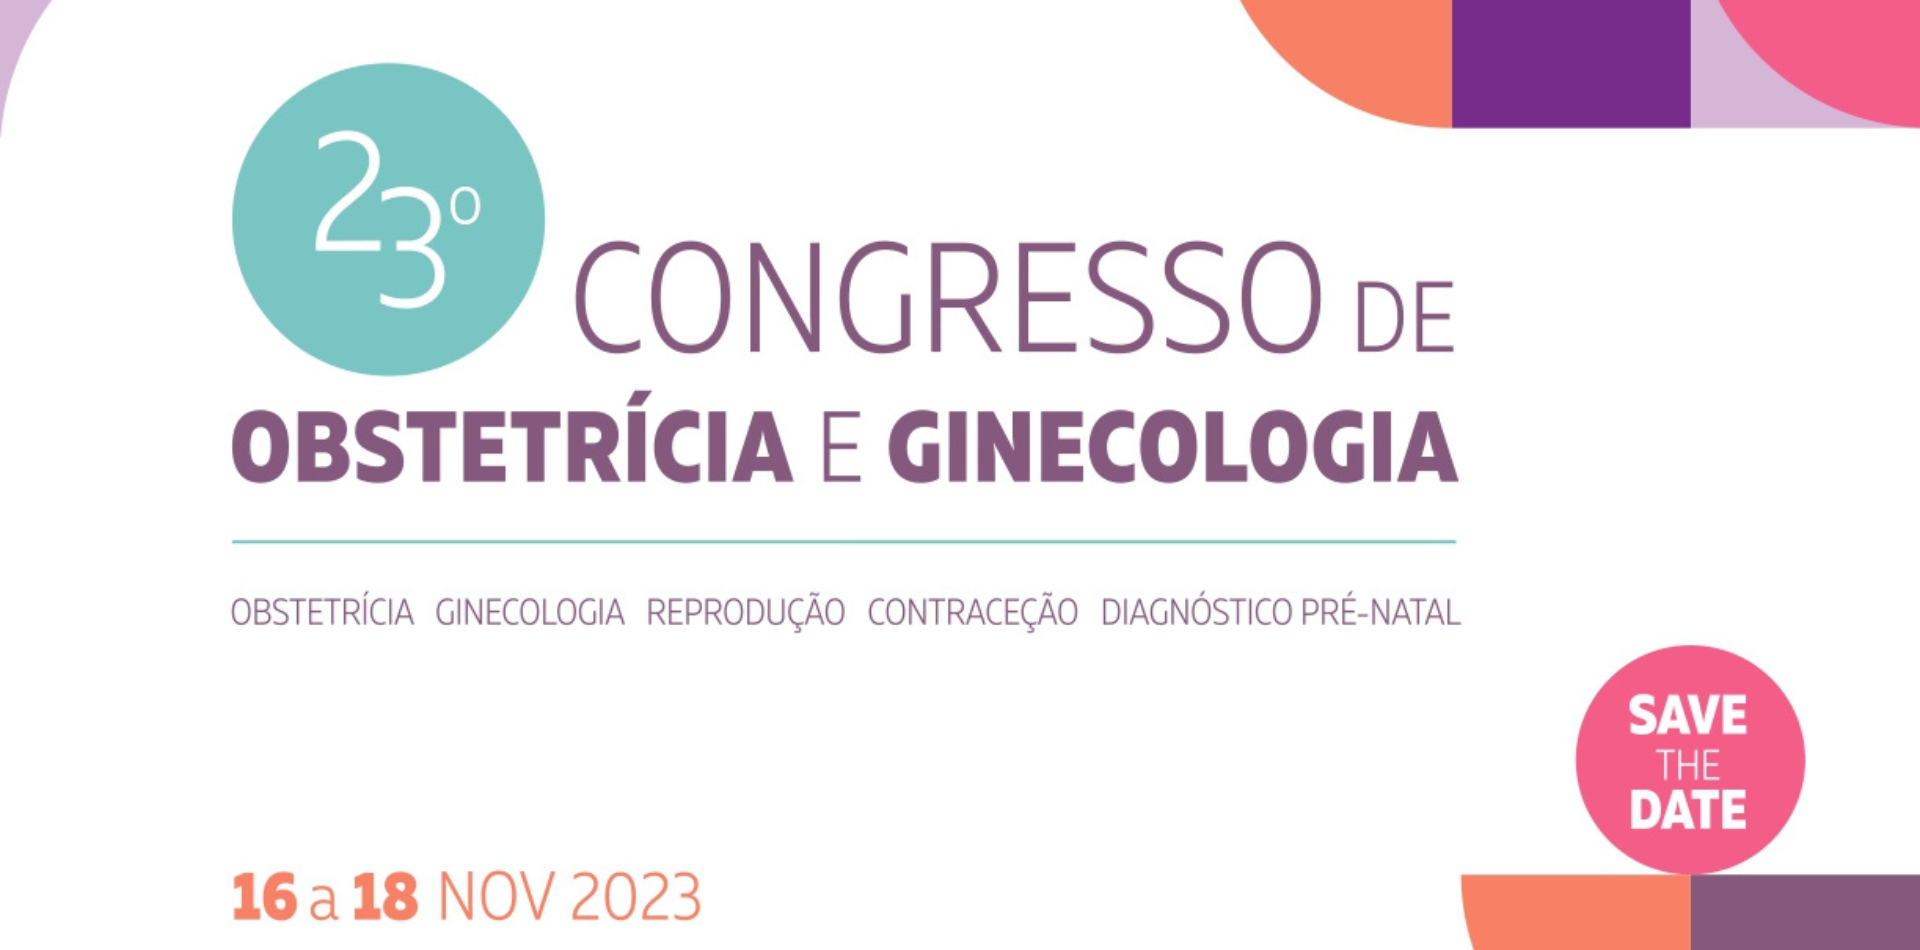 23º Congresso de Obstetrícia e Ginecologia